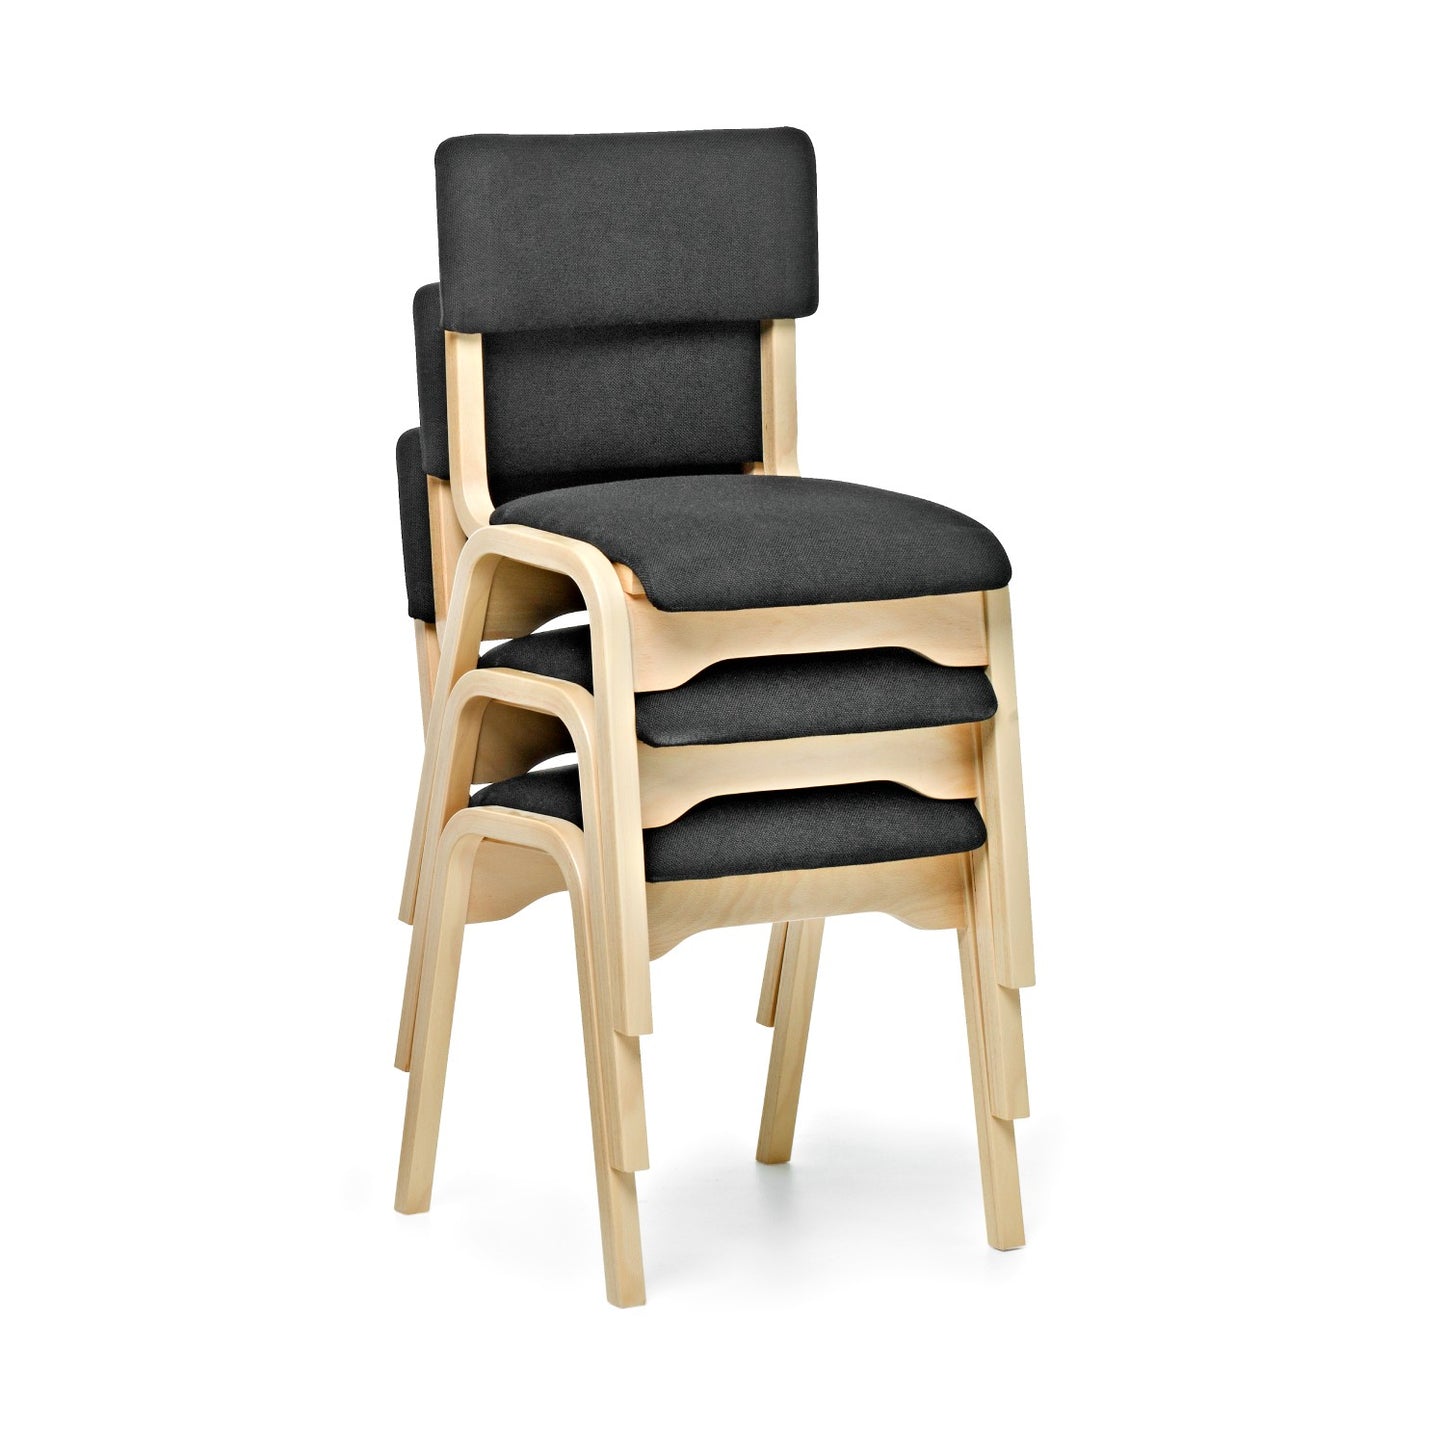 Fixstolen klädd är en stapelbar stol som är enkel & smidig att förvara.